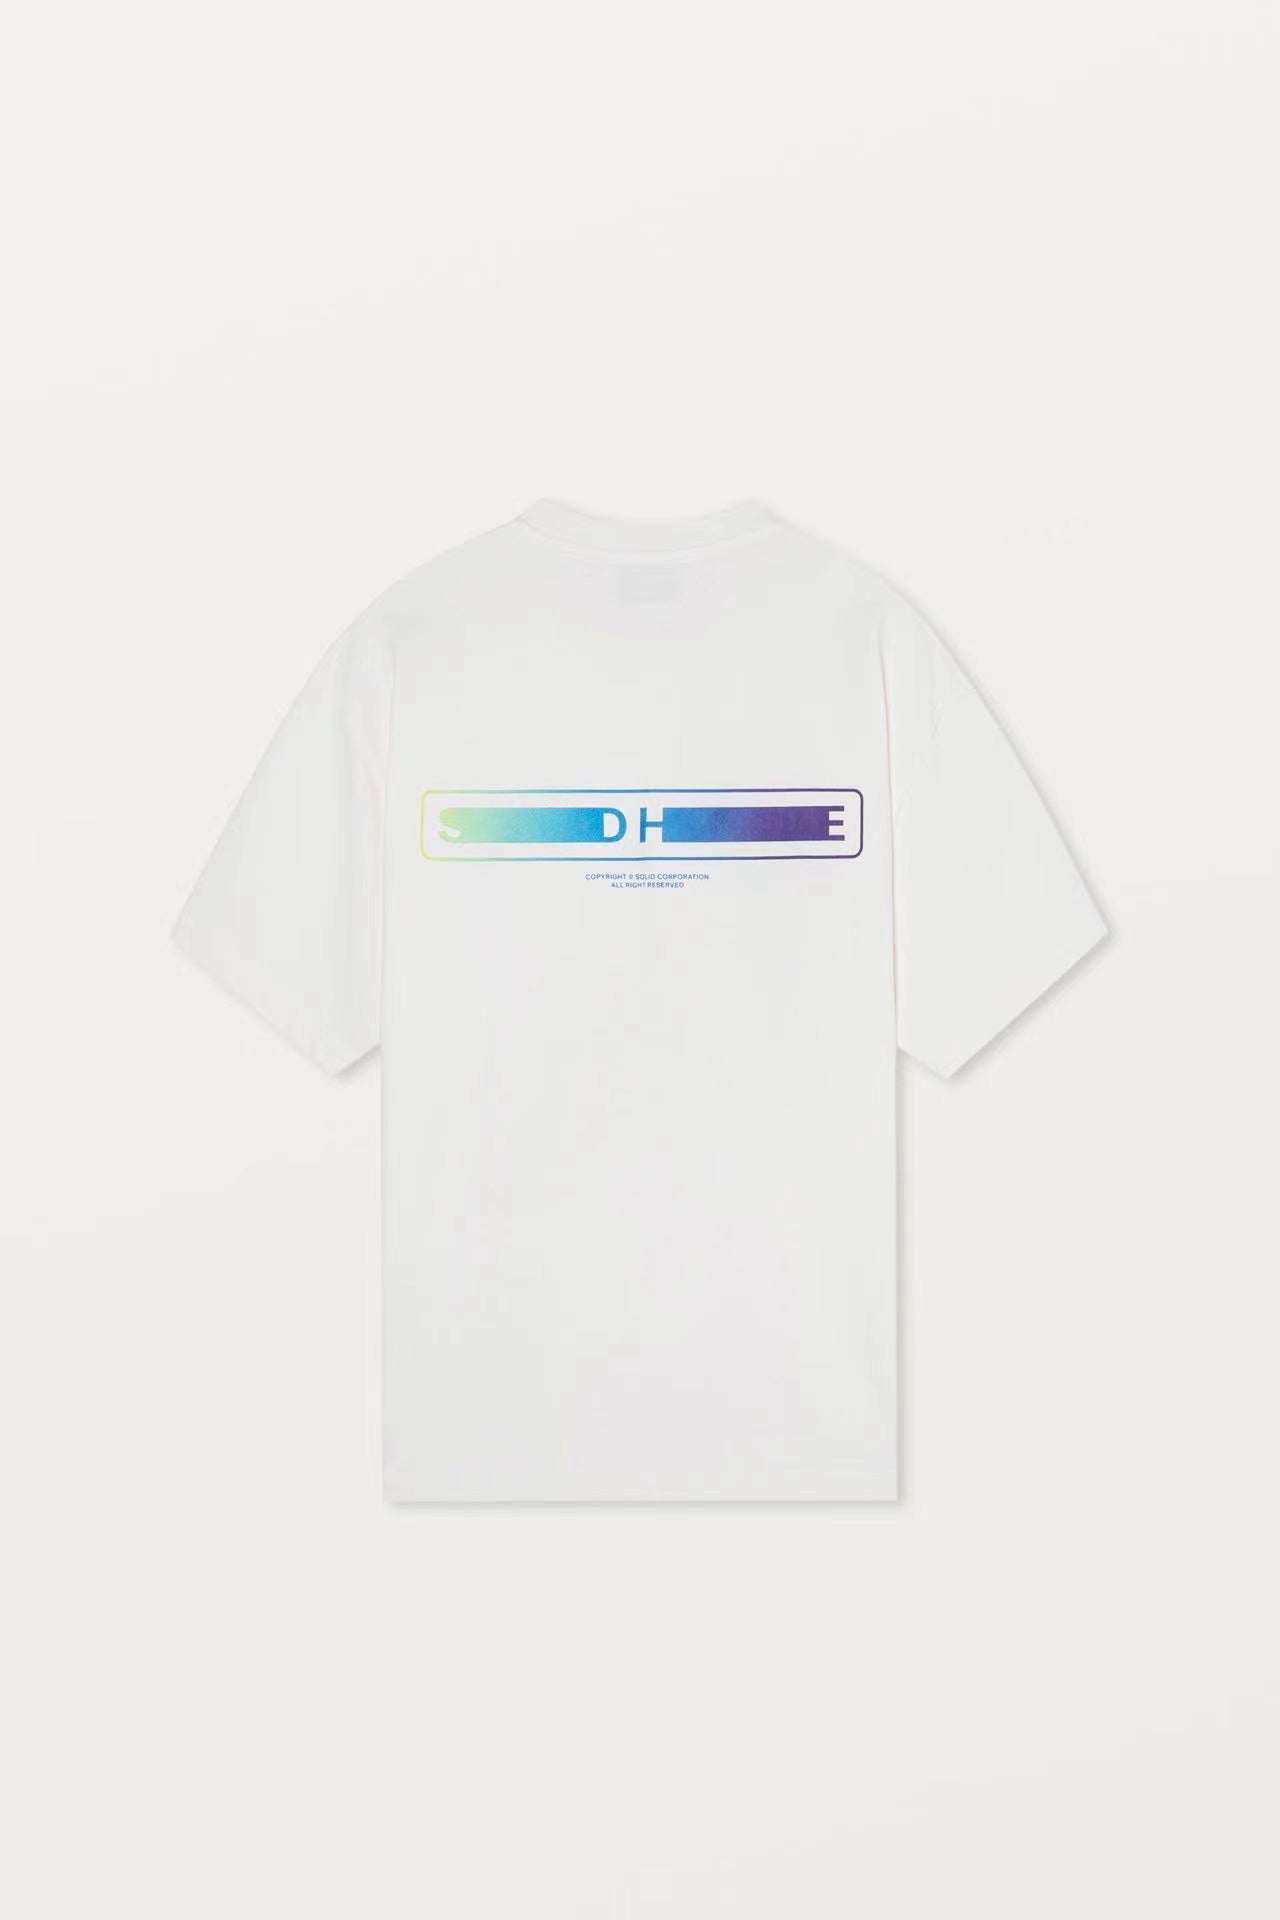 탑솔리드옴므 / 솔리드옴므  루즈핏 자수 라운드 프린트 티셔츠